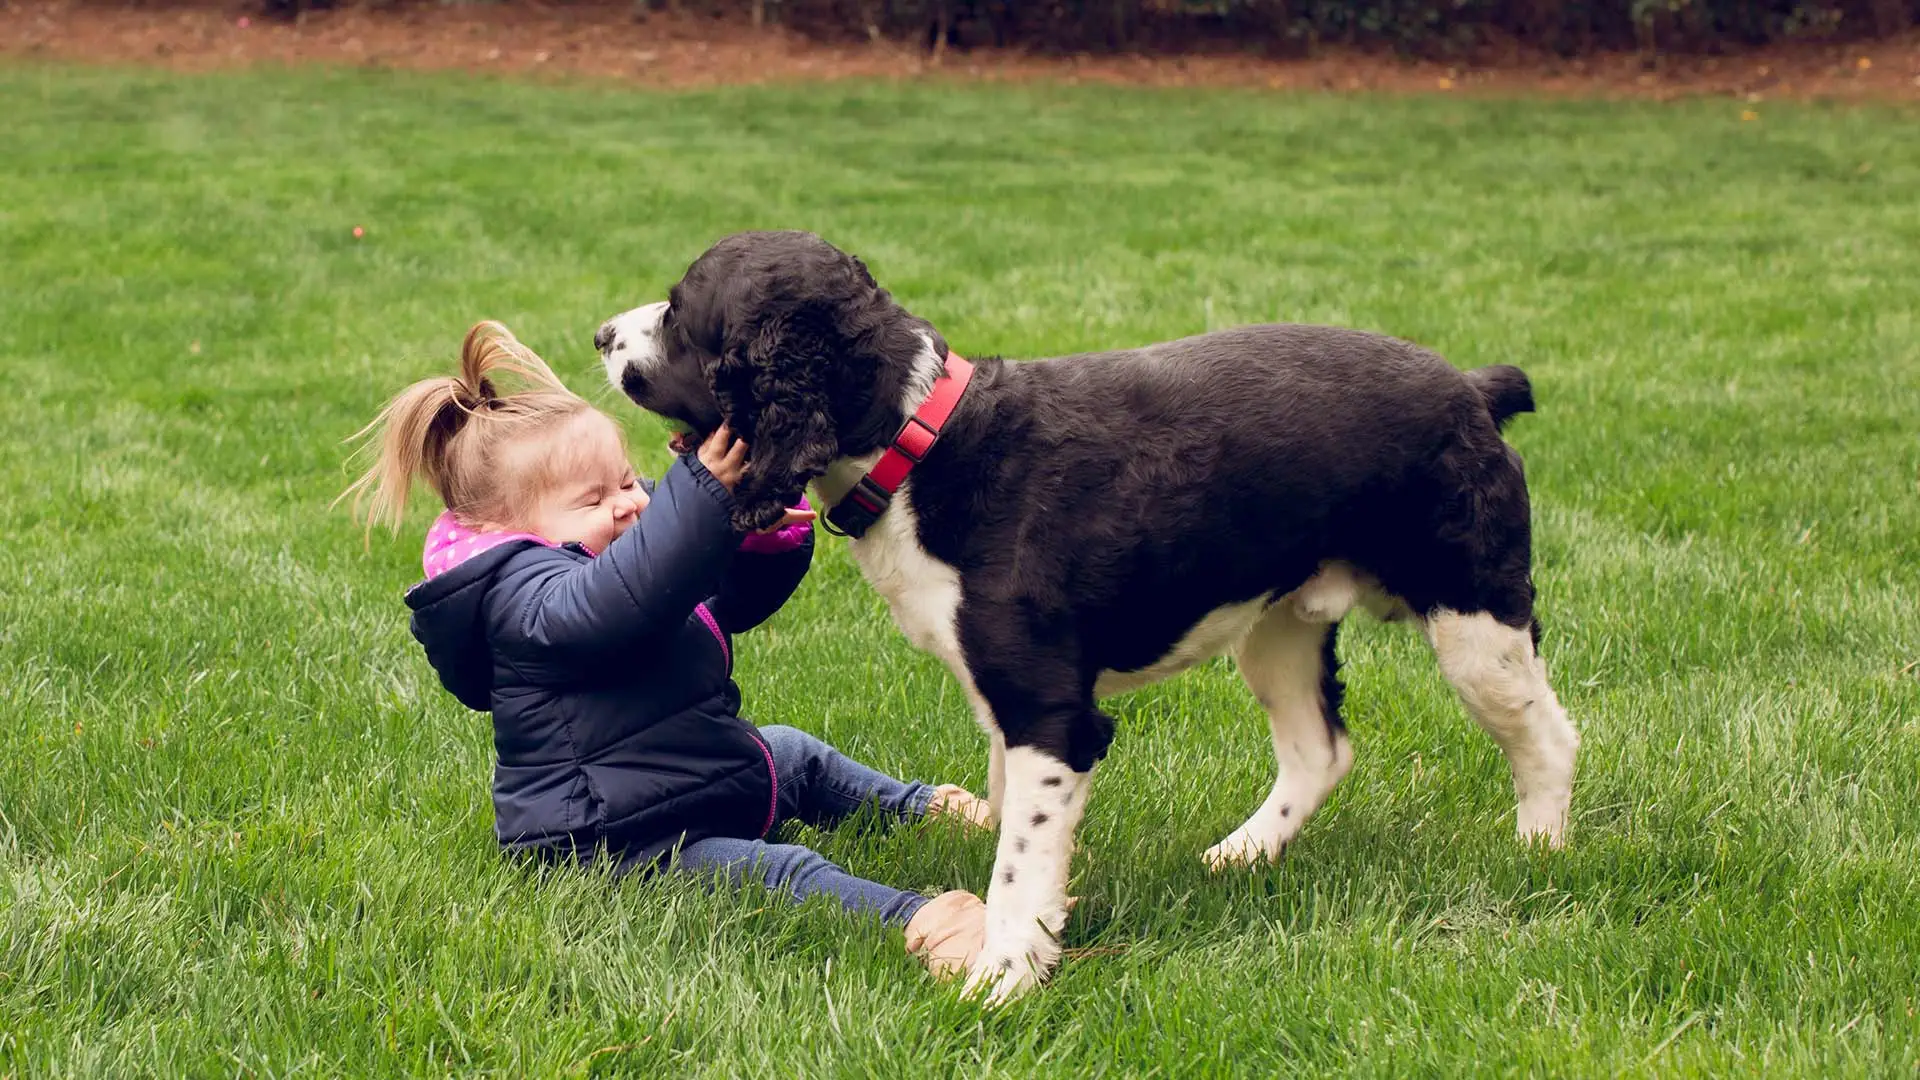 Little girl and dog playing in a healthy lawn near Alpharetta, GA.